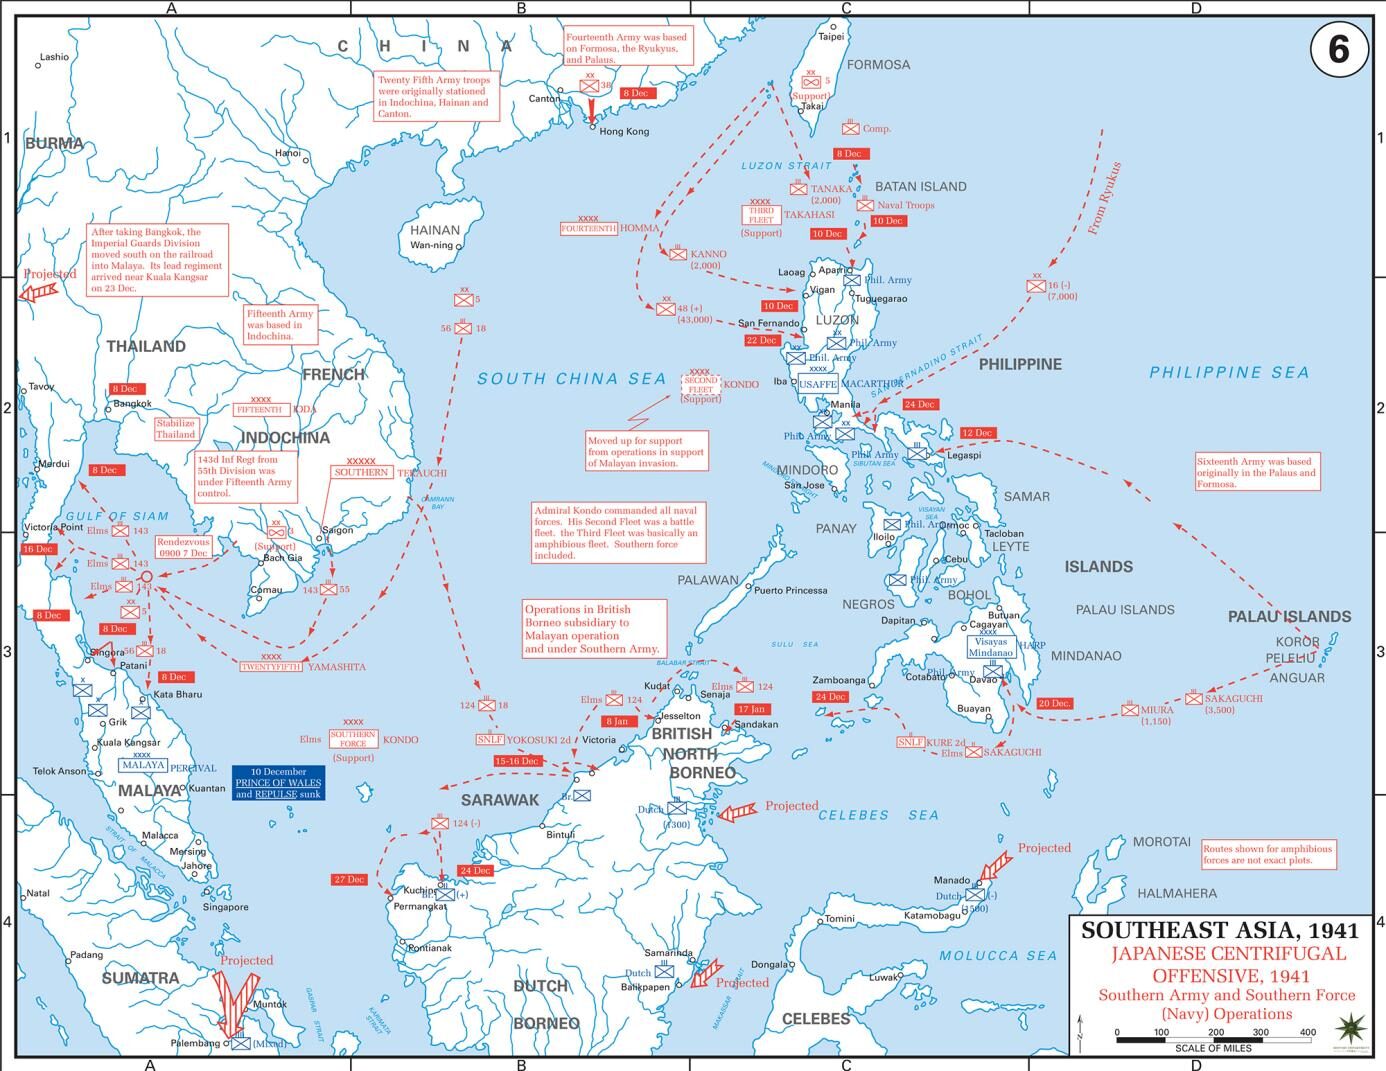 日本偷袭珍珠港,真的给美军造成重大损失了吗?